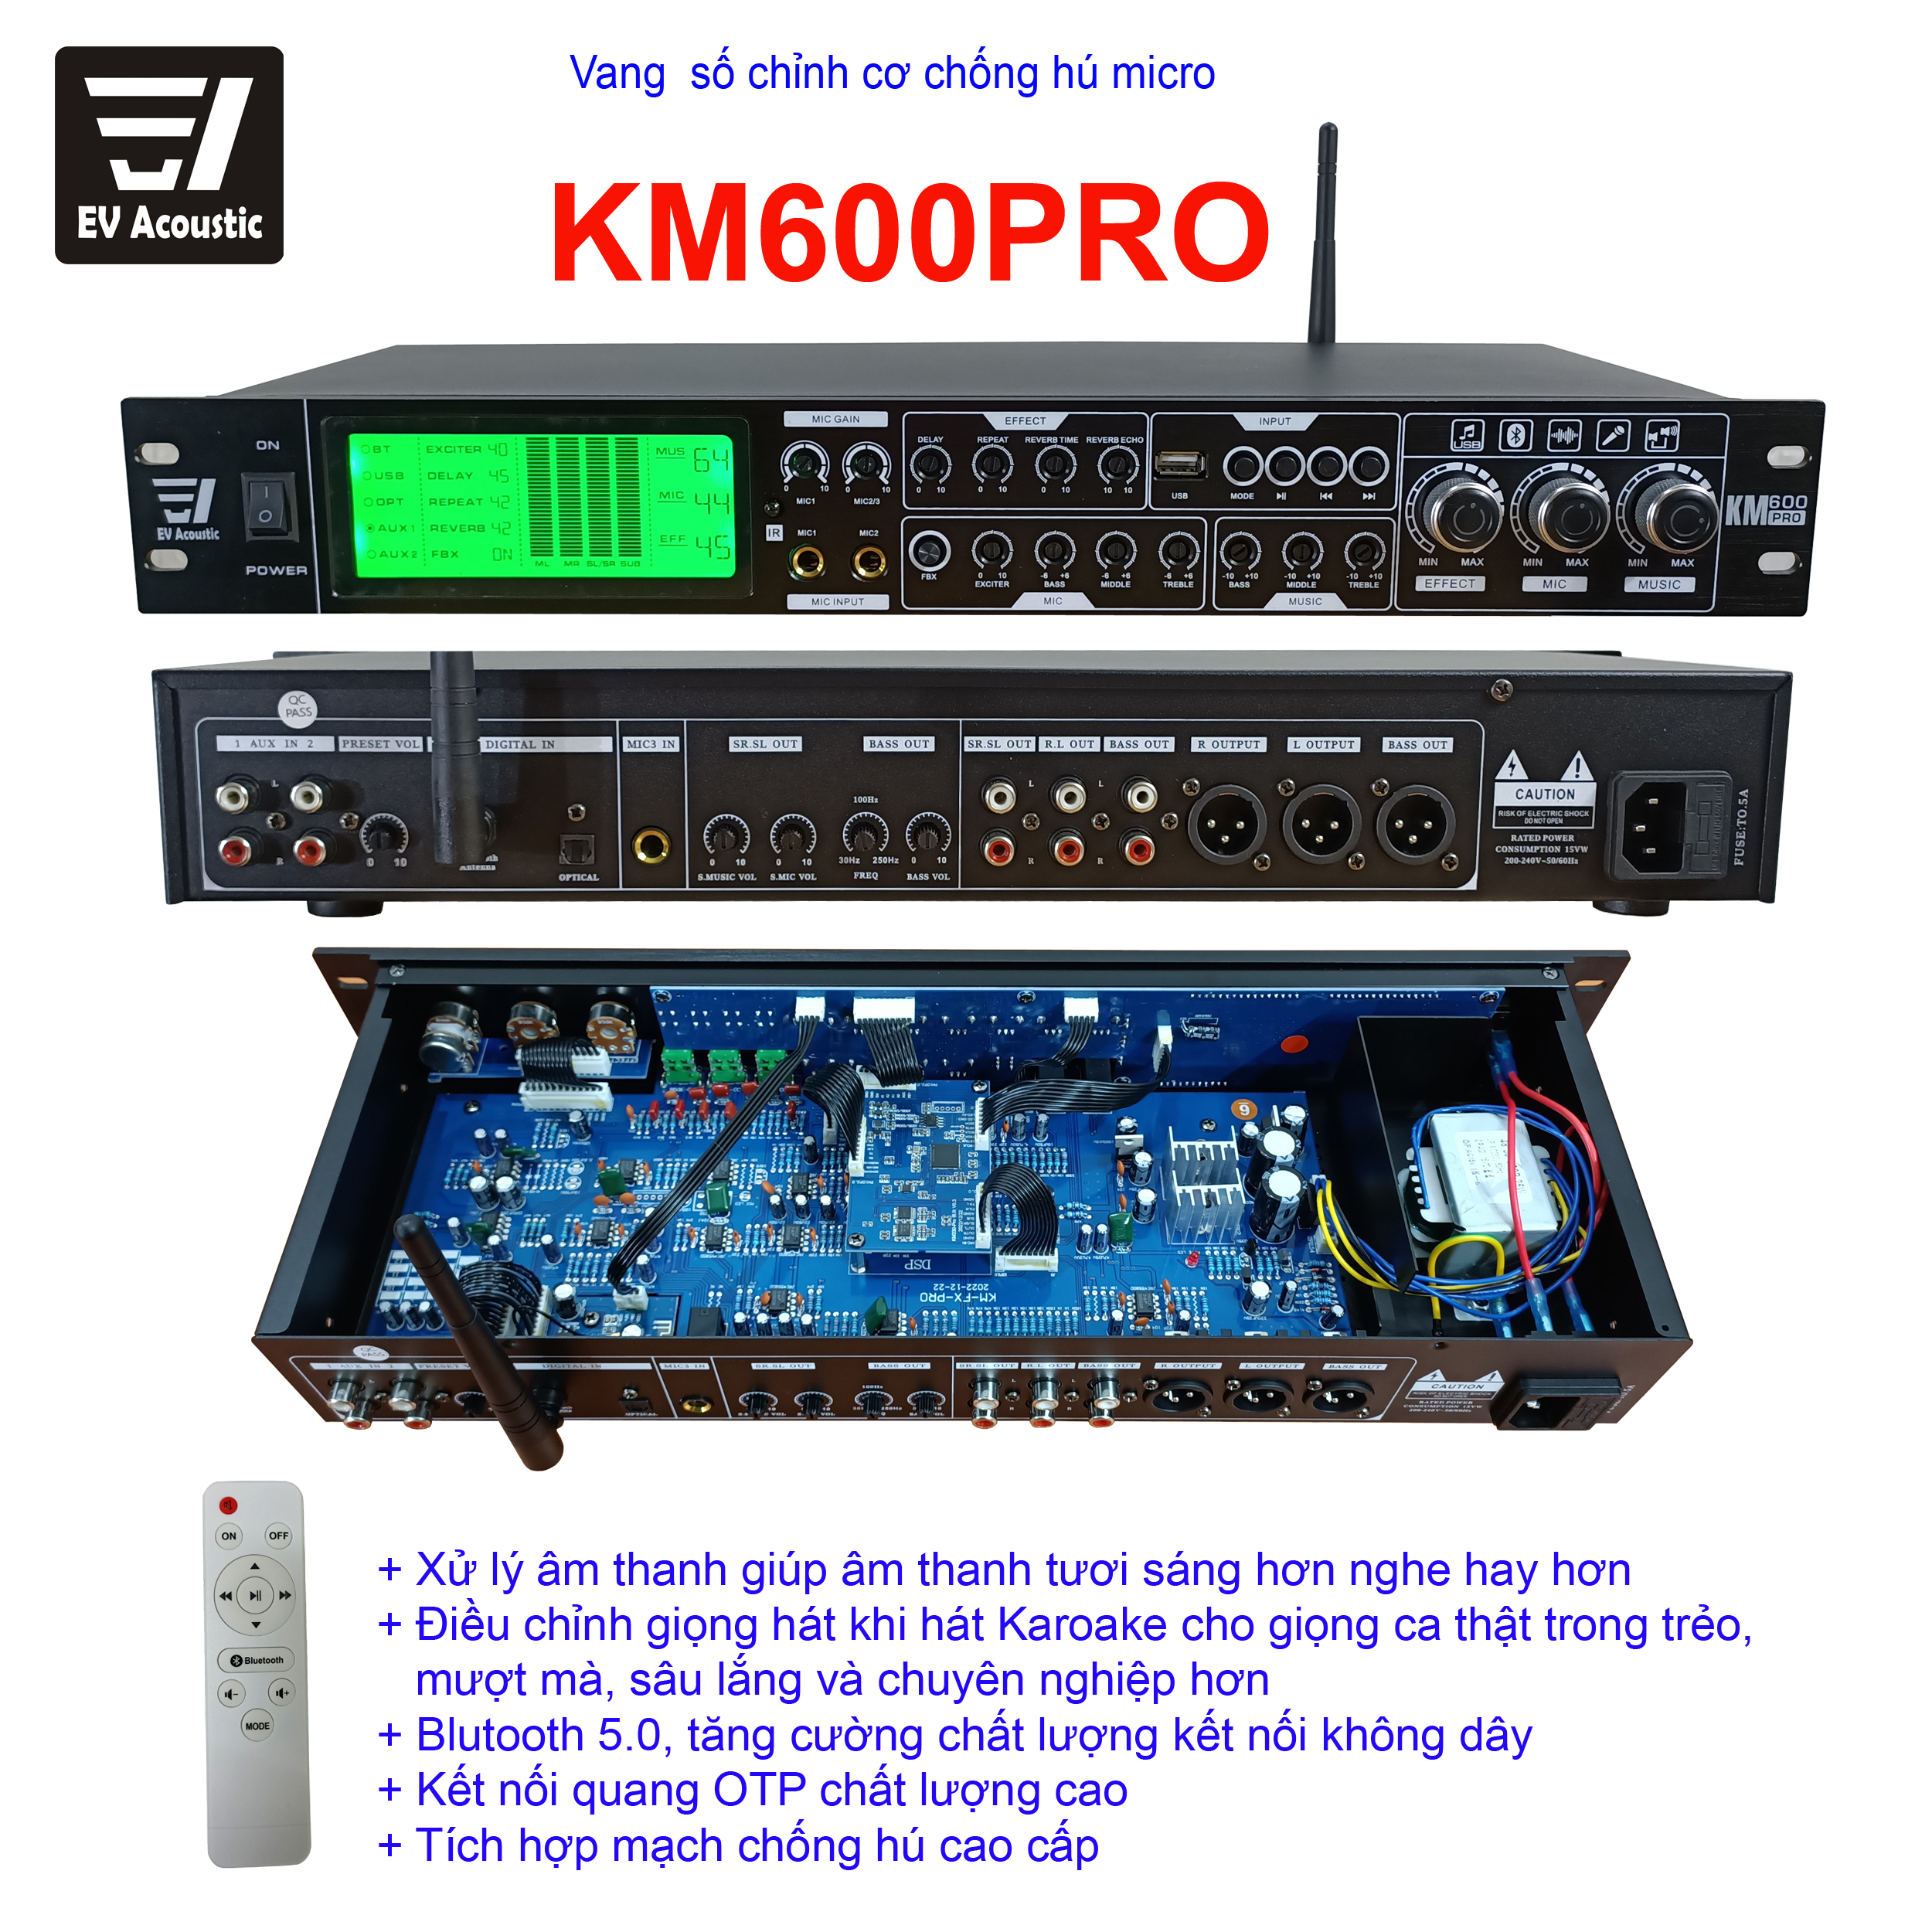 Vang số 48 bit lai cơ karaoke chống hú EV ACOUNTIC KM600pro, KM580, vang cơ chống hú, vang karaoke gia đình